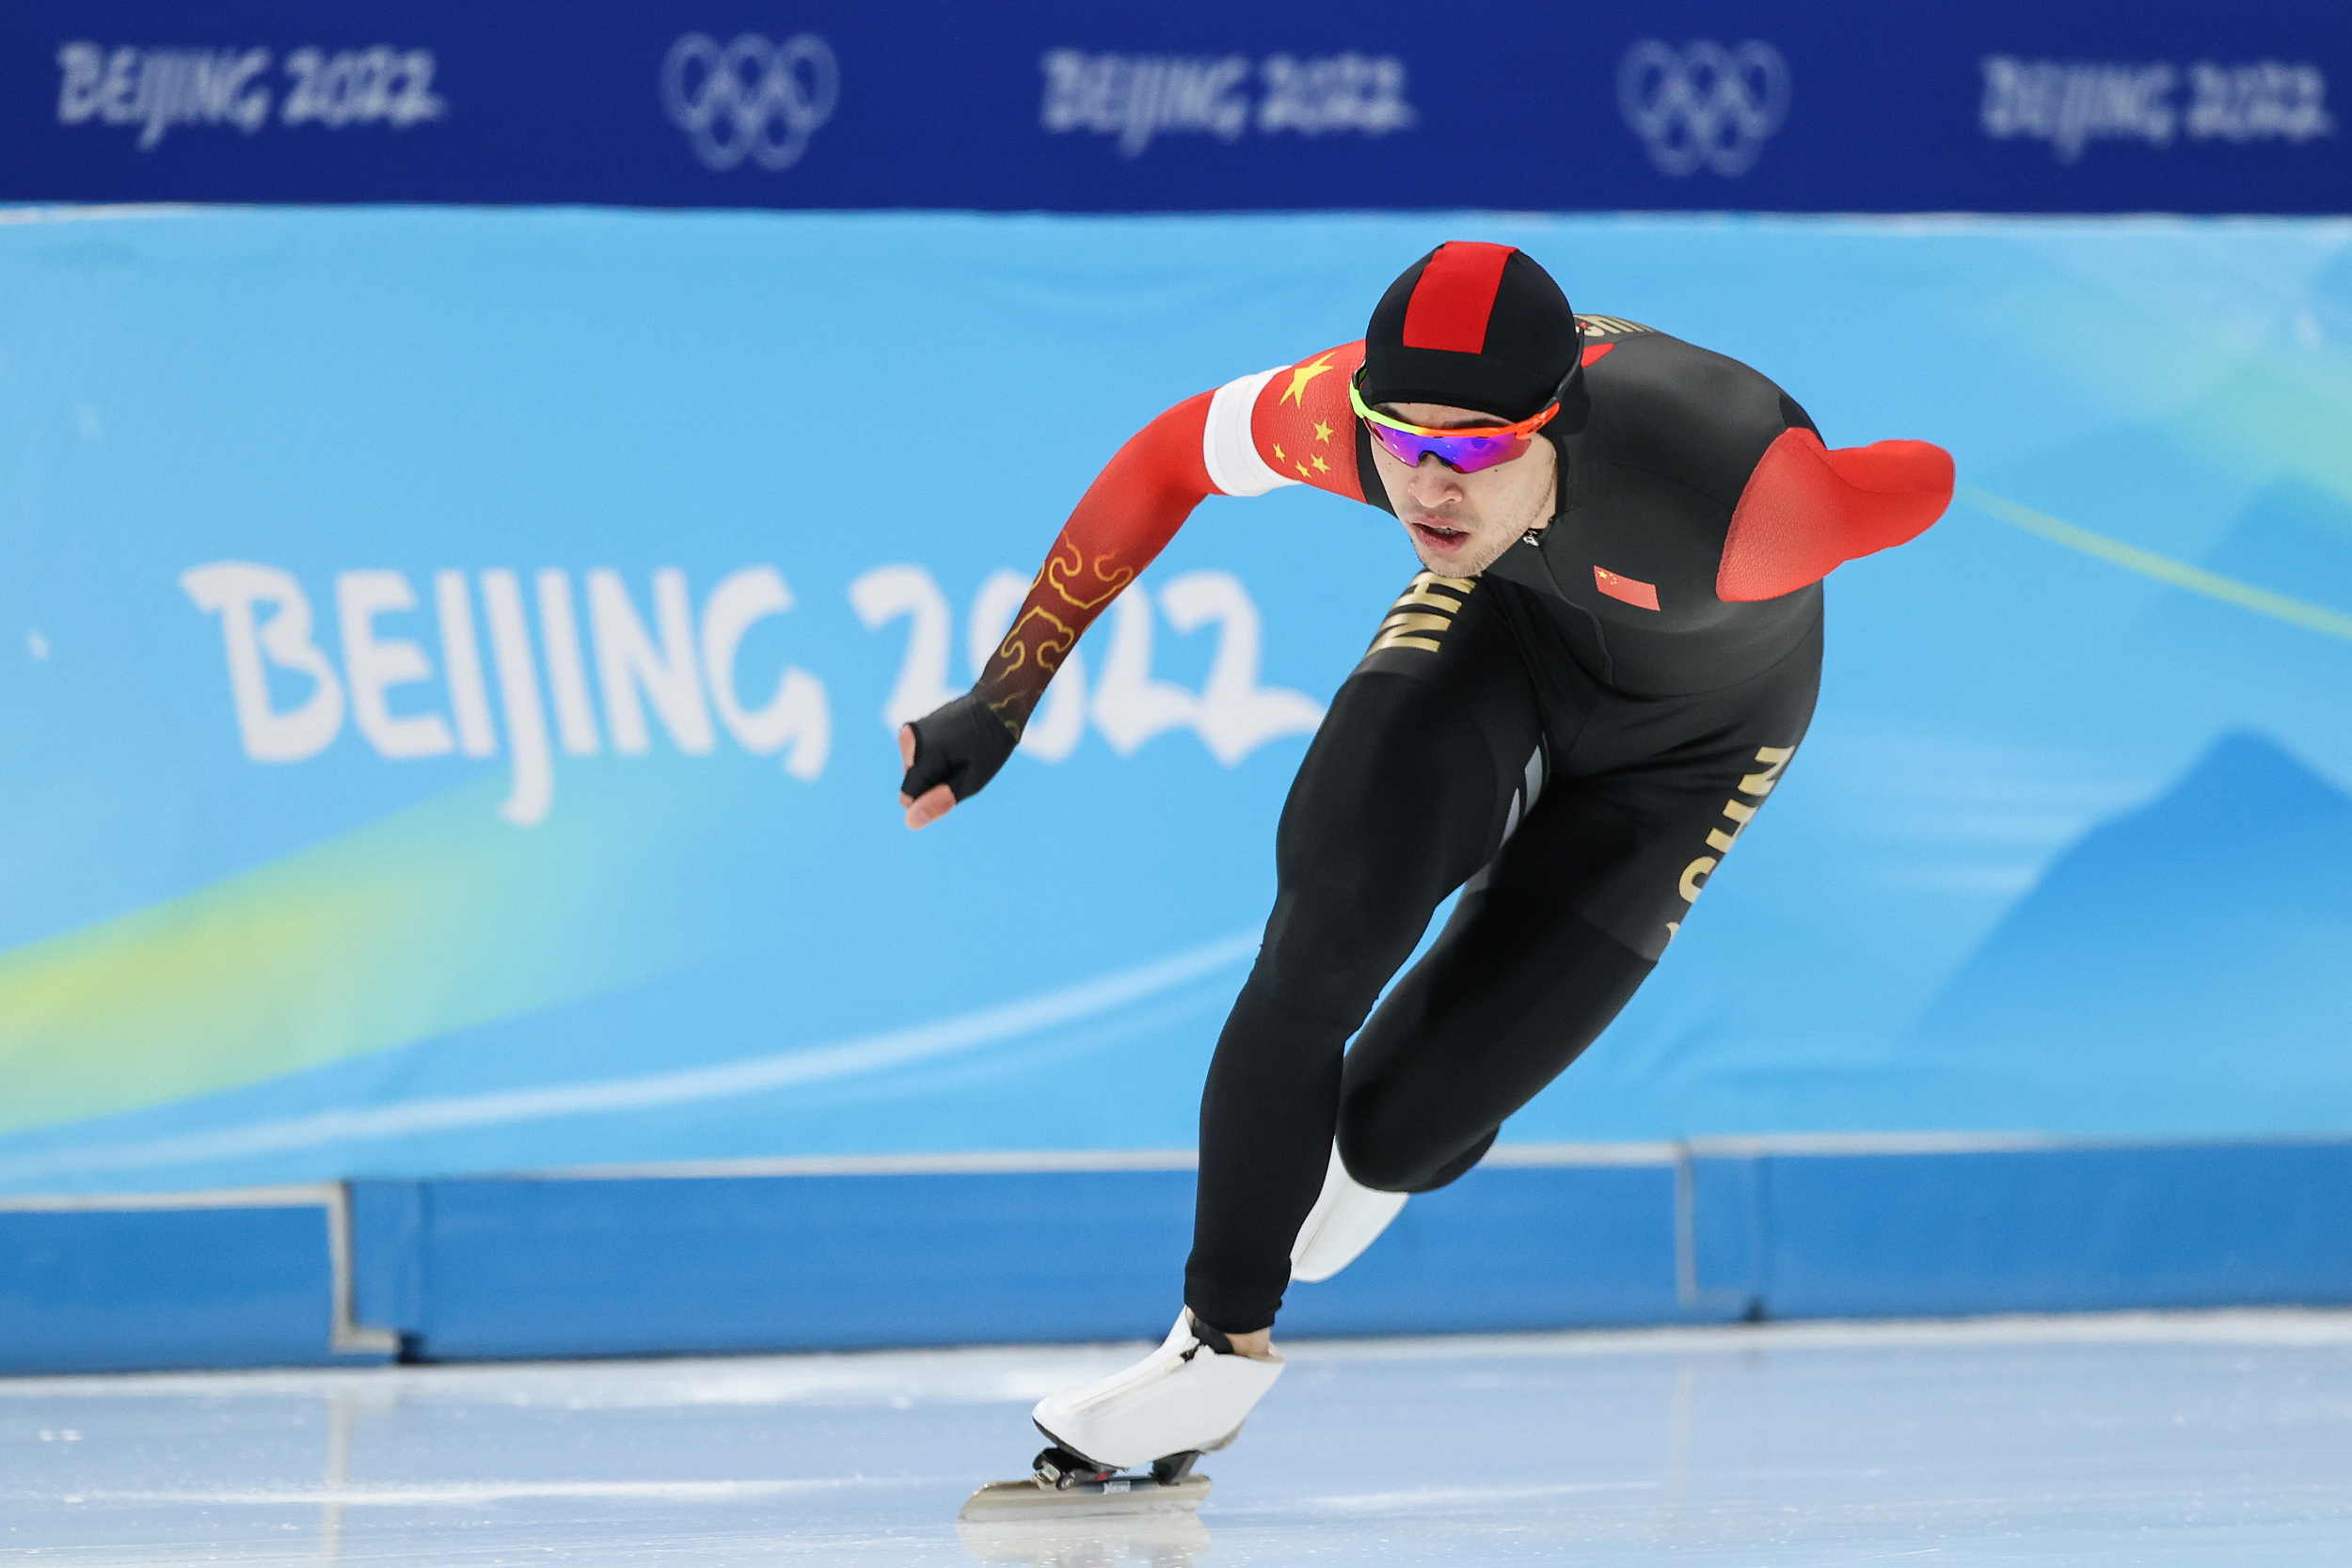 【回放】2018冬奥会速度滑冰男子集体出发决赛_冬奥会_腾讯视频